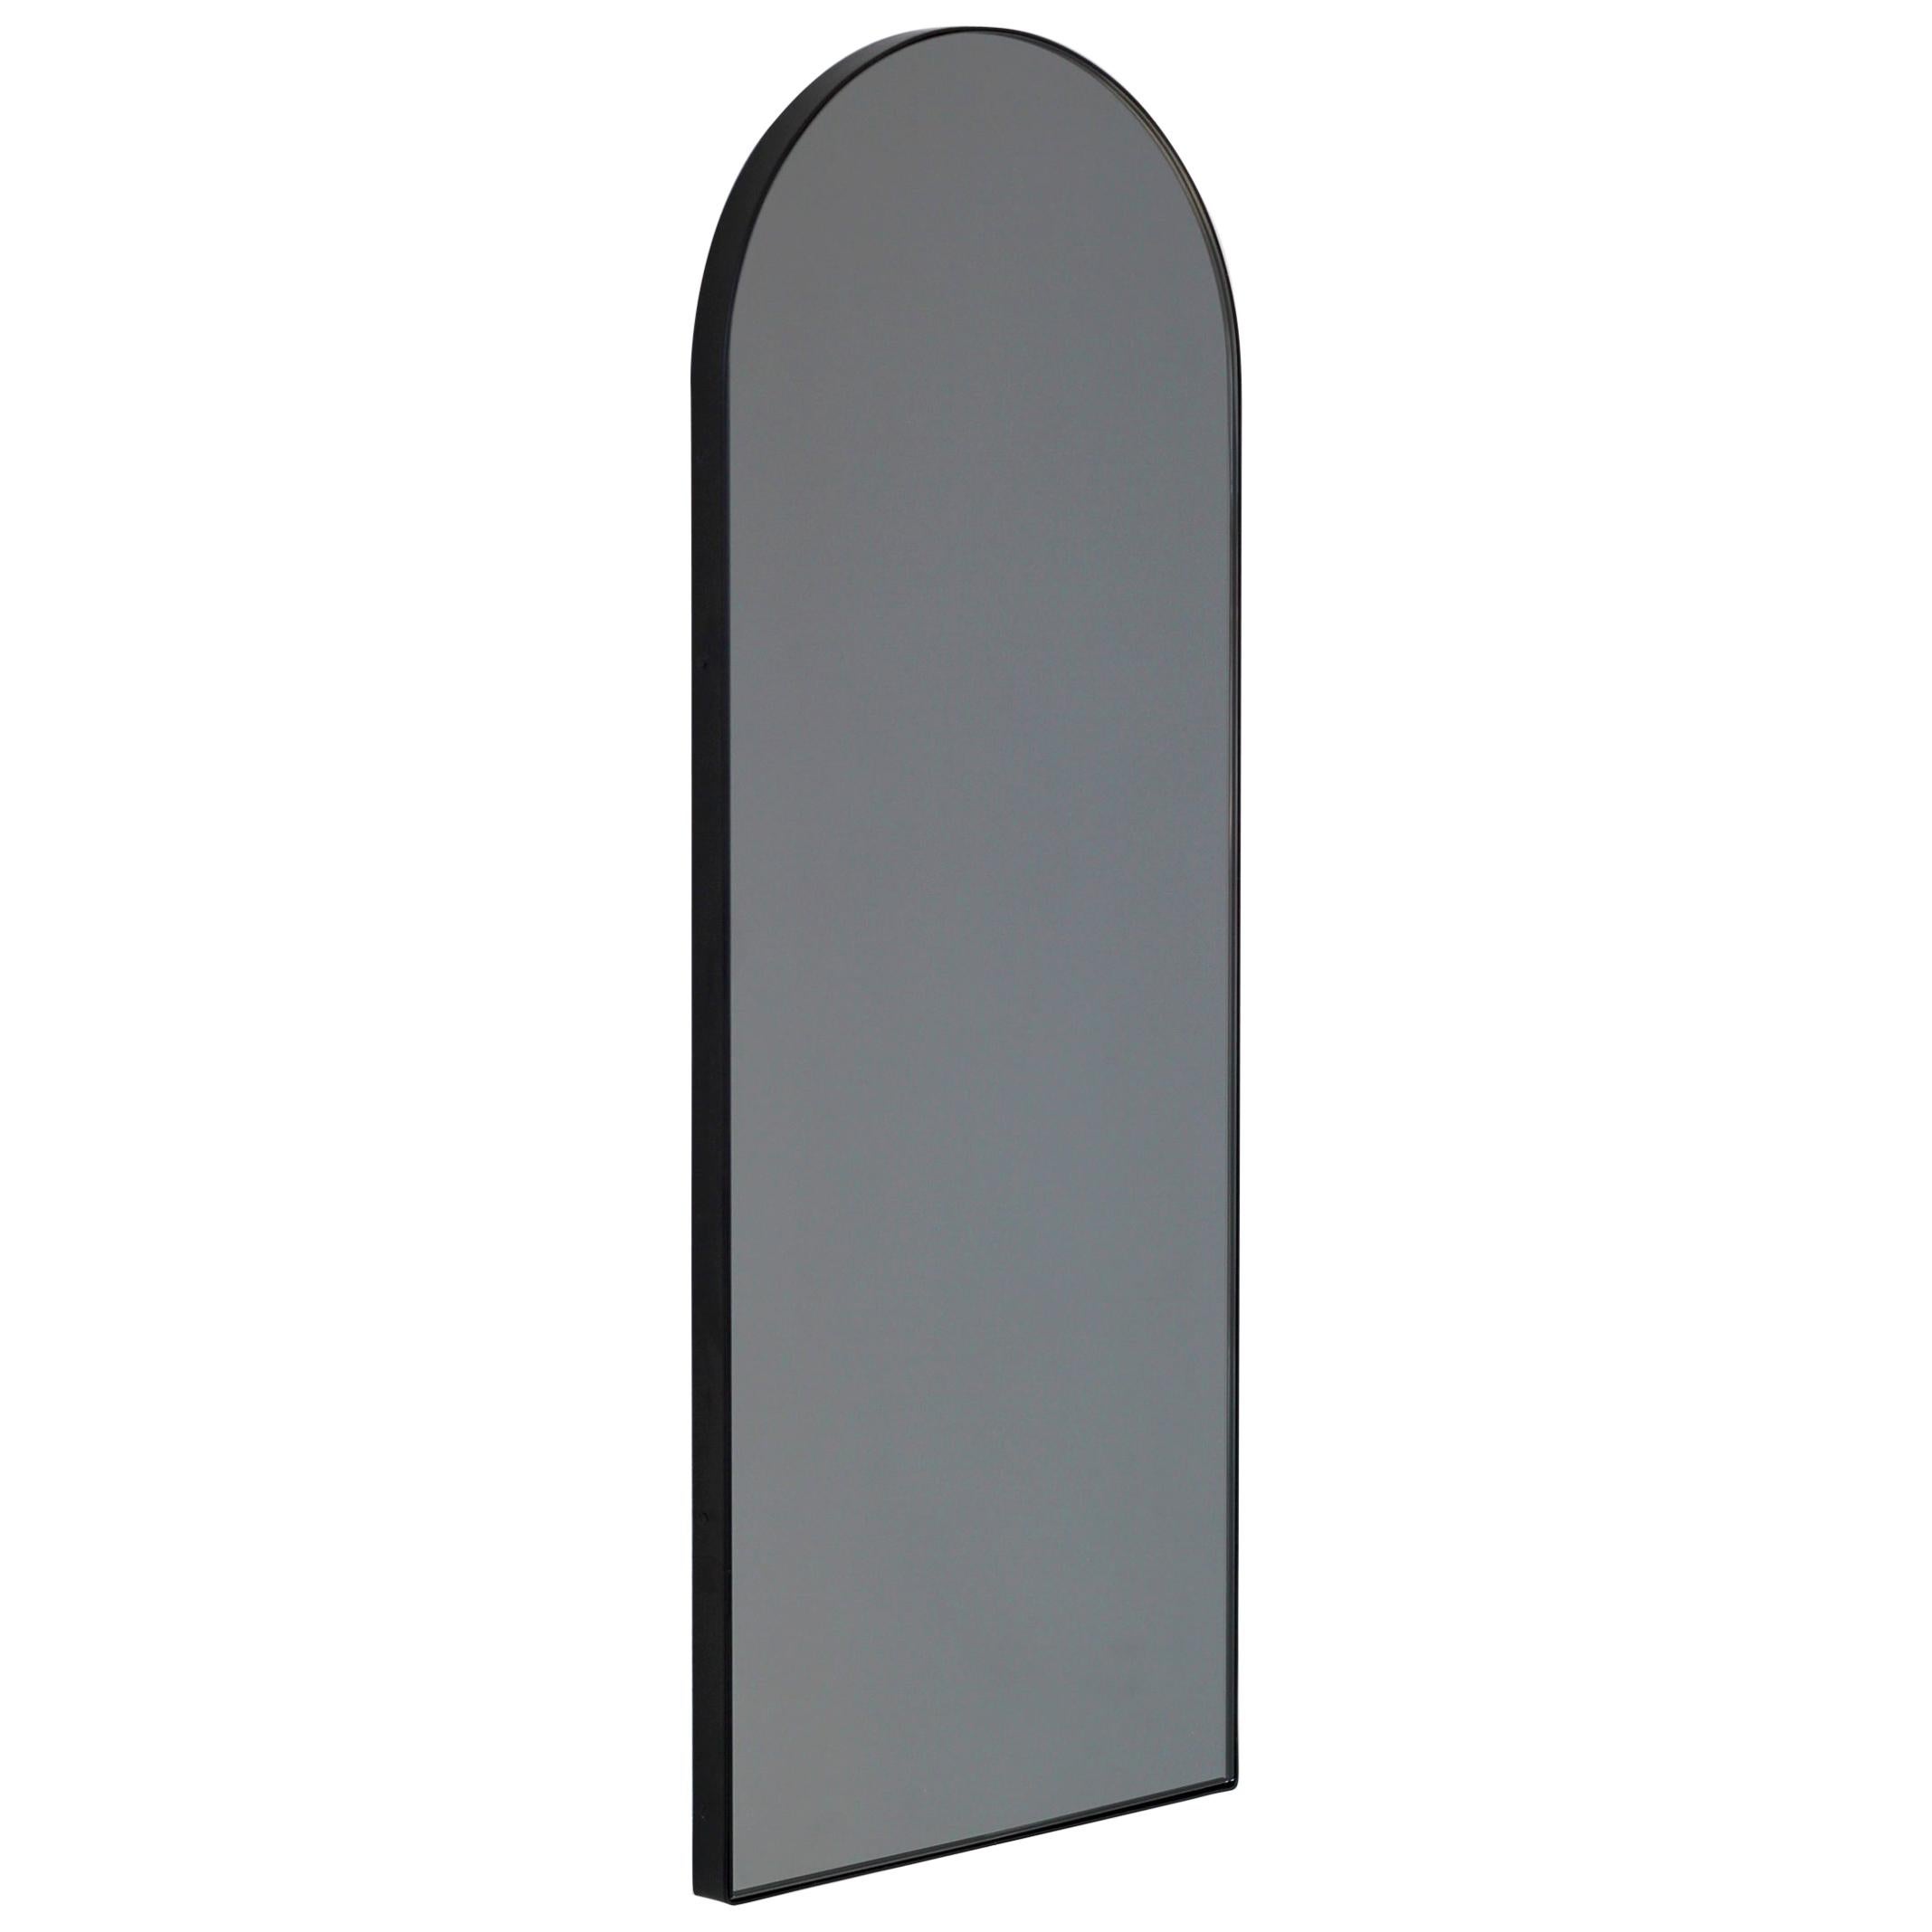 Arcus Arch geformter, schwarz getönter, zeitgenössischer Spiegel mit schwarzem Rahmen, mittelgroß